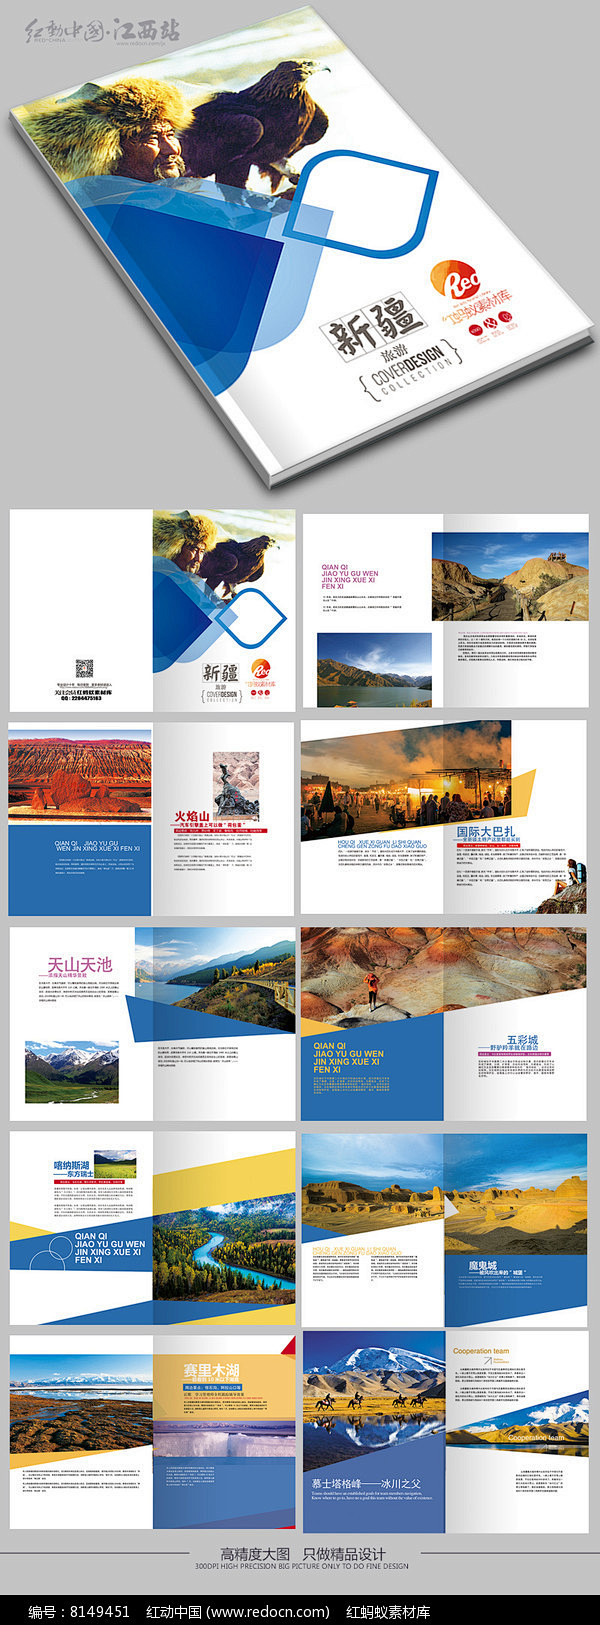 新疆旅游宣传画册版式设计图片 旅游画册 ...